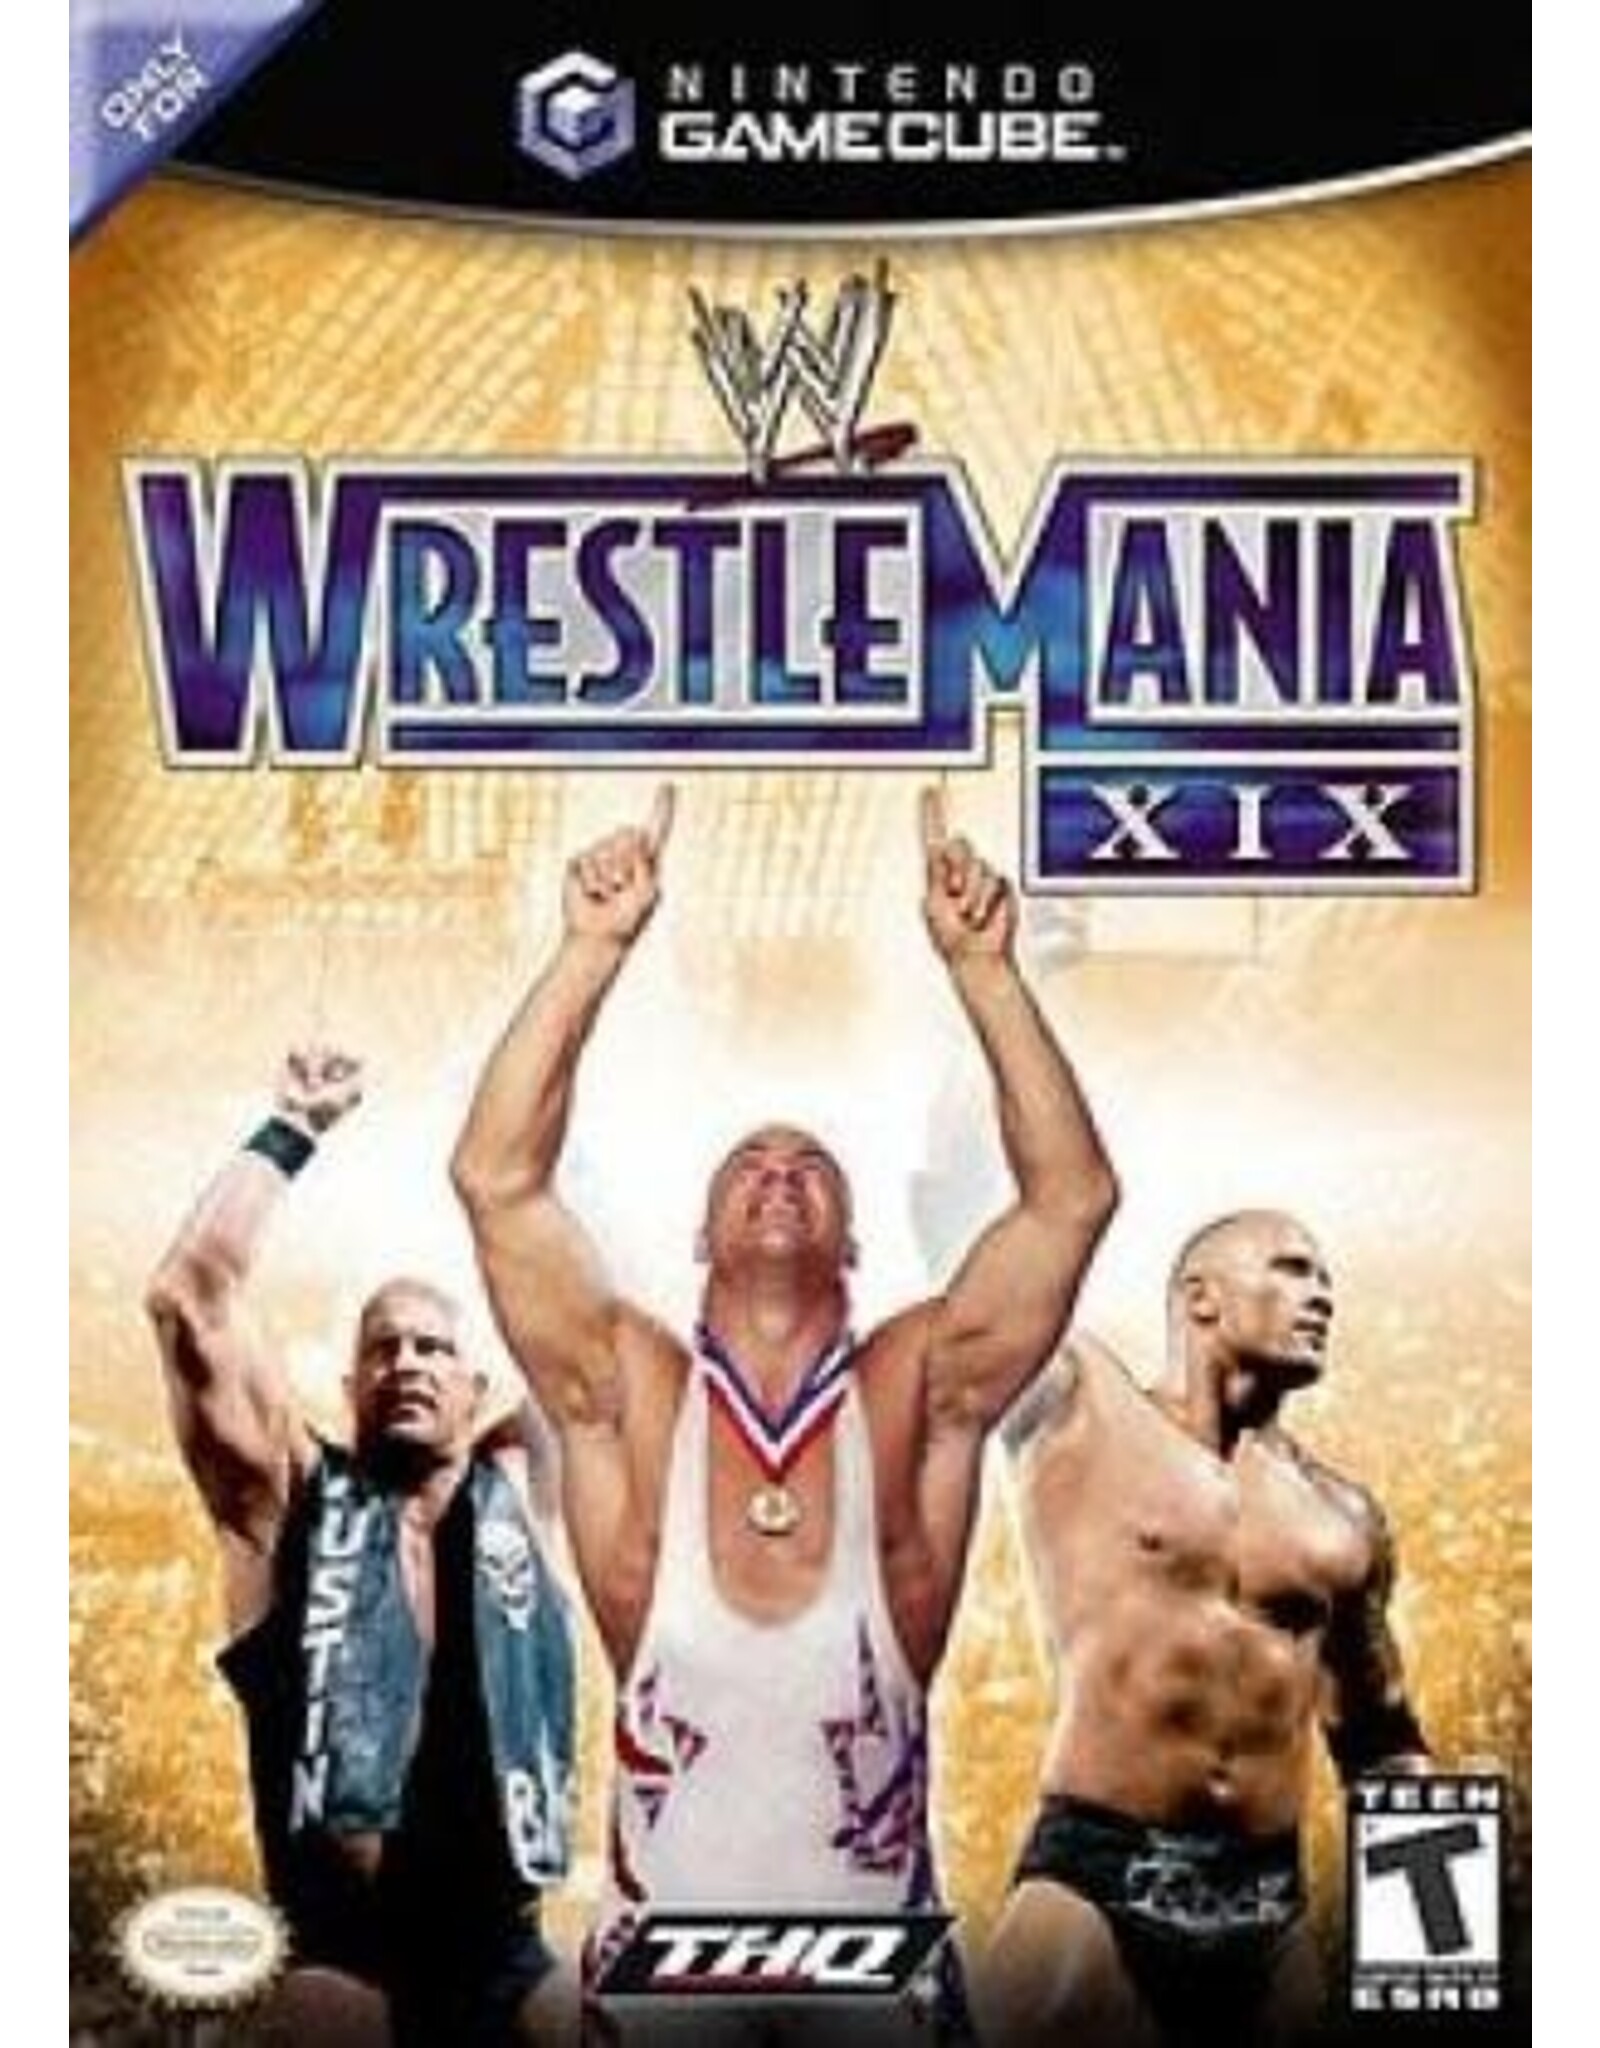 Gamecube WWE Wrestlemania XIX (No Manual, Damaged Sleeve)